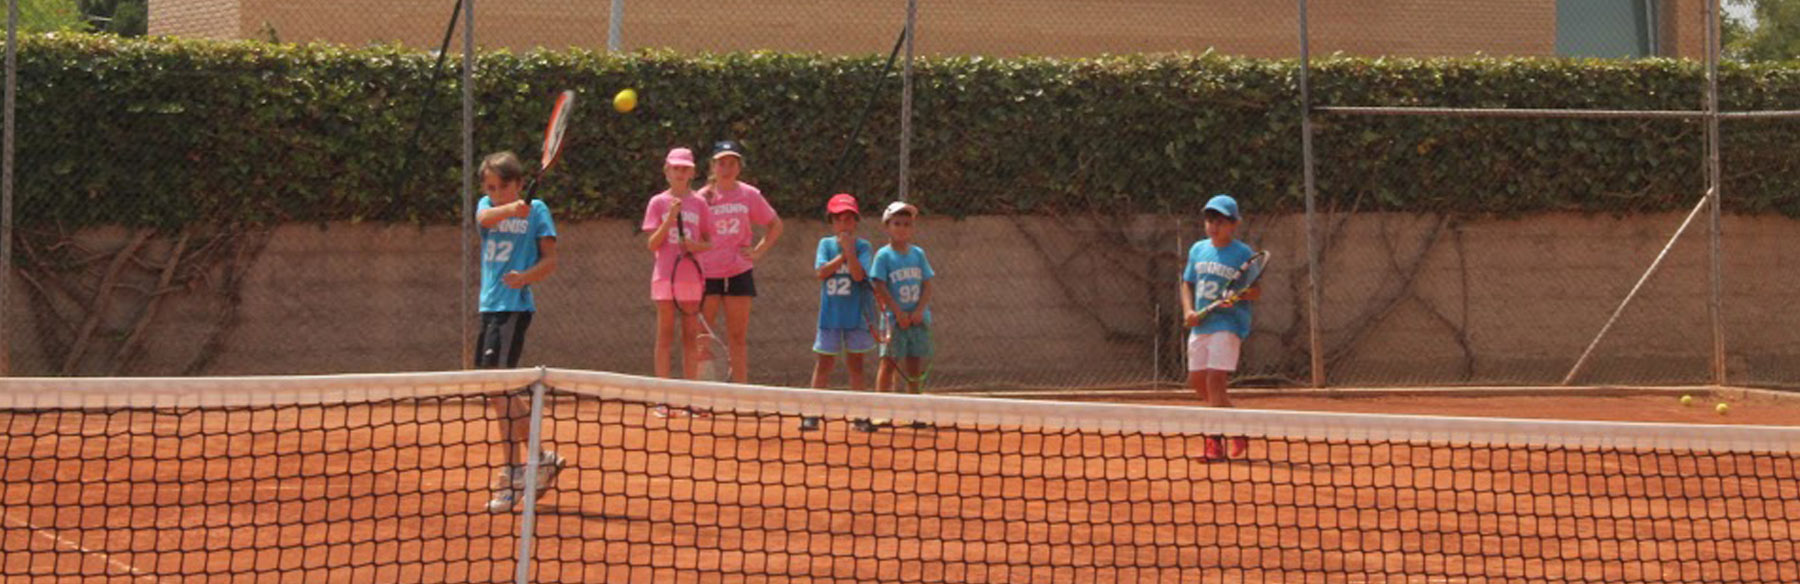 Academia Tenis 92. Campus tenis verano en náquera valencia con ingles intensivo